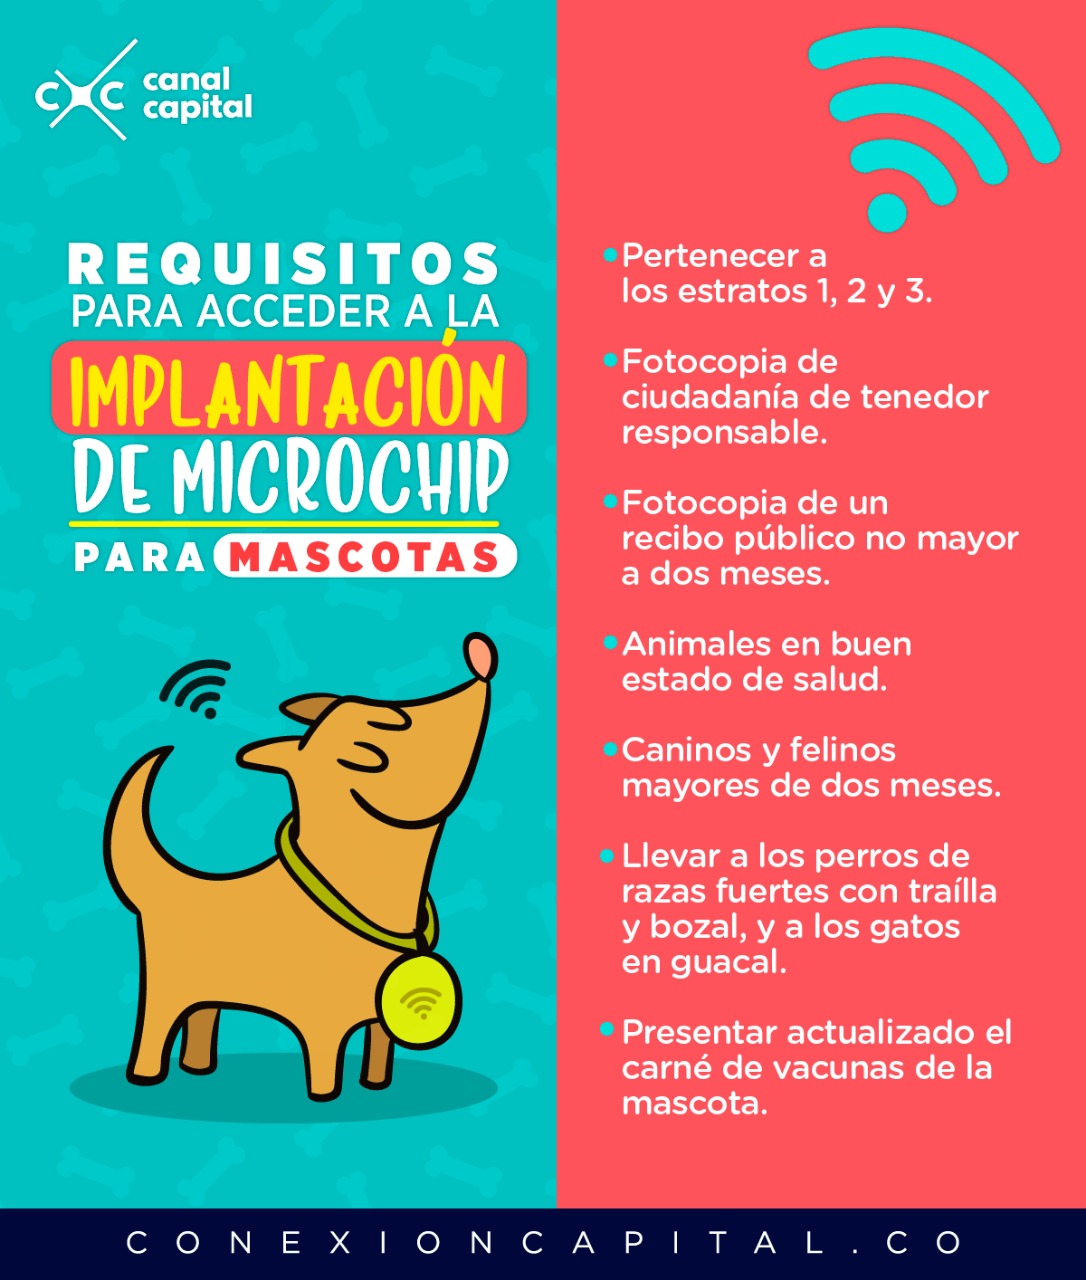 Desconexión Presentador barrer para que sirve el microchip de los perros, Veteinario domicilio en Madrid  poner micro y - la-palmera.es